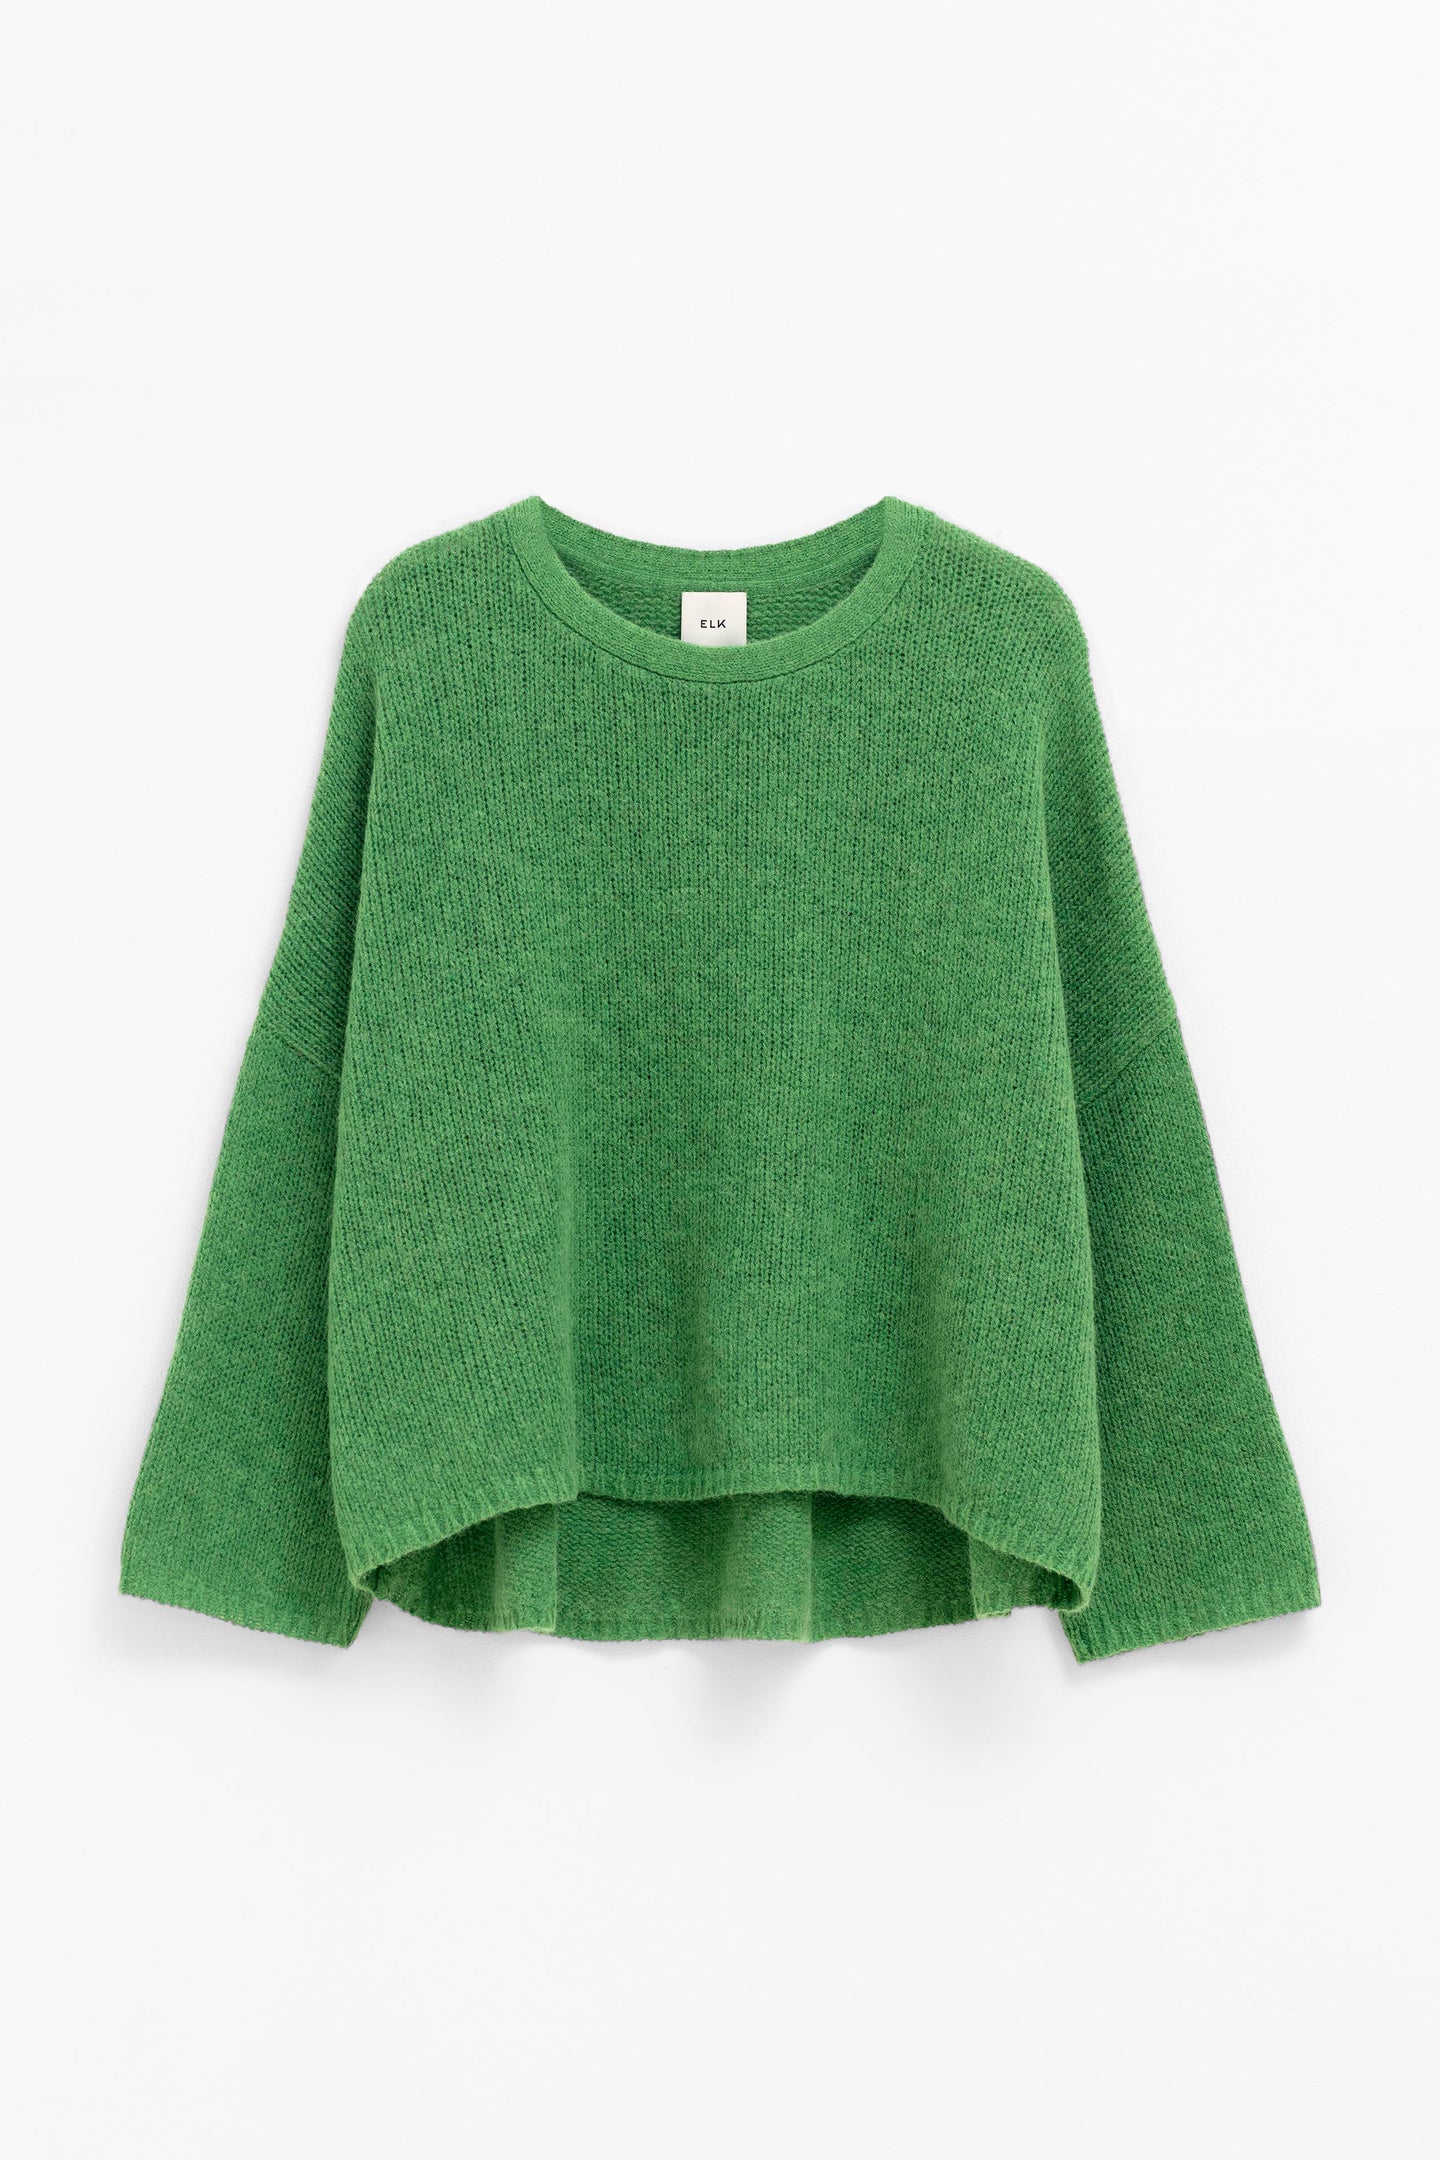 Agna Sweater Aloe Green